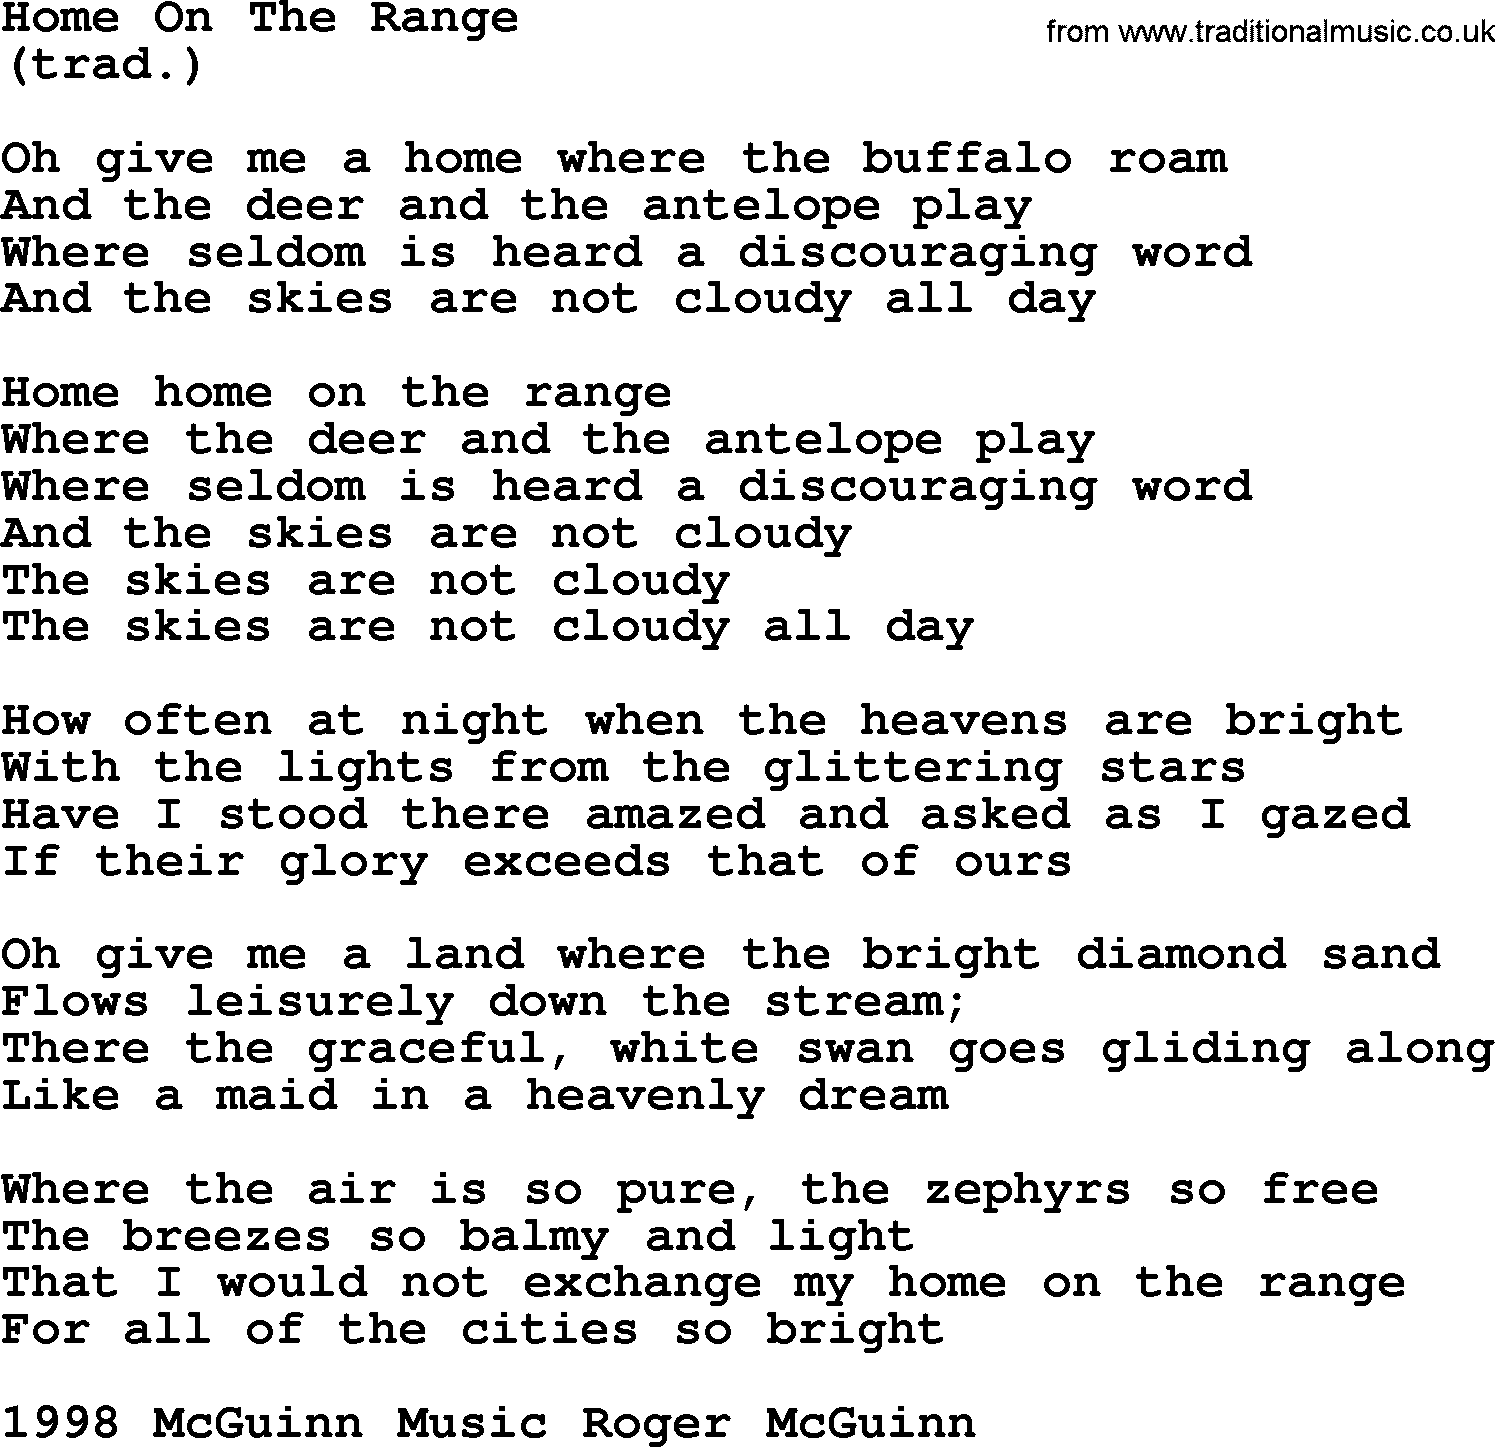 gammel eksotisk kradse Home On The Range, by The Byrds - lyrics with pdf